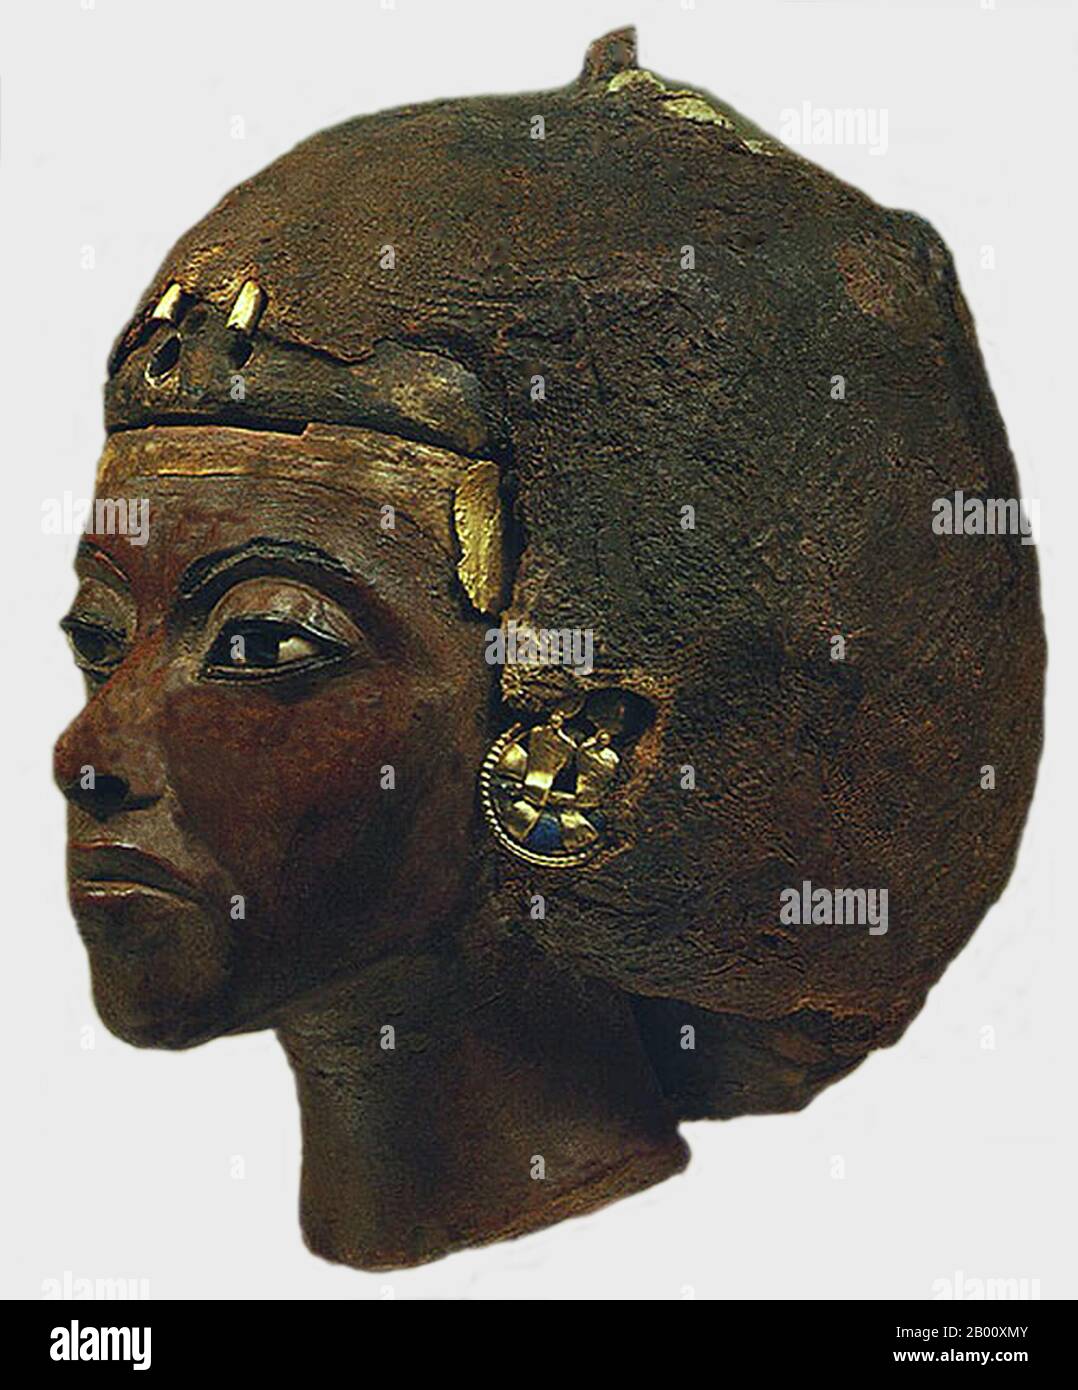 Egitto: Tiye (1398-1338 a.C.), Grande Regina del faraone Amenhotep III della XVIII dinastia (c.. 1388-51 BCE), c. 1355 BCE. Tiye (c.. 1398 a.C. – 1338 a.C., anche Taià, Tiy e Tiyi) fu la figlia di Yuya e Tjuyu (anche Thuyu). Divenne la Grande moglie reale del faraone egiziano Amenhotep III e matriarca della famiglia Amarna da cui sono nati molti membri della famiglia reale dell'Antico Egitto. Il padre di Tiye, Yuya, era un ricco proprietario terriero della città dell'Alto Egitto di Akhmin, dove serviva come sacerdote e sovrintendente di buoi. Foto Stock